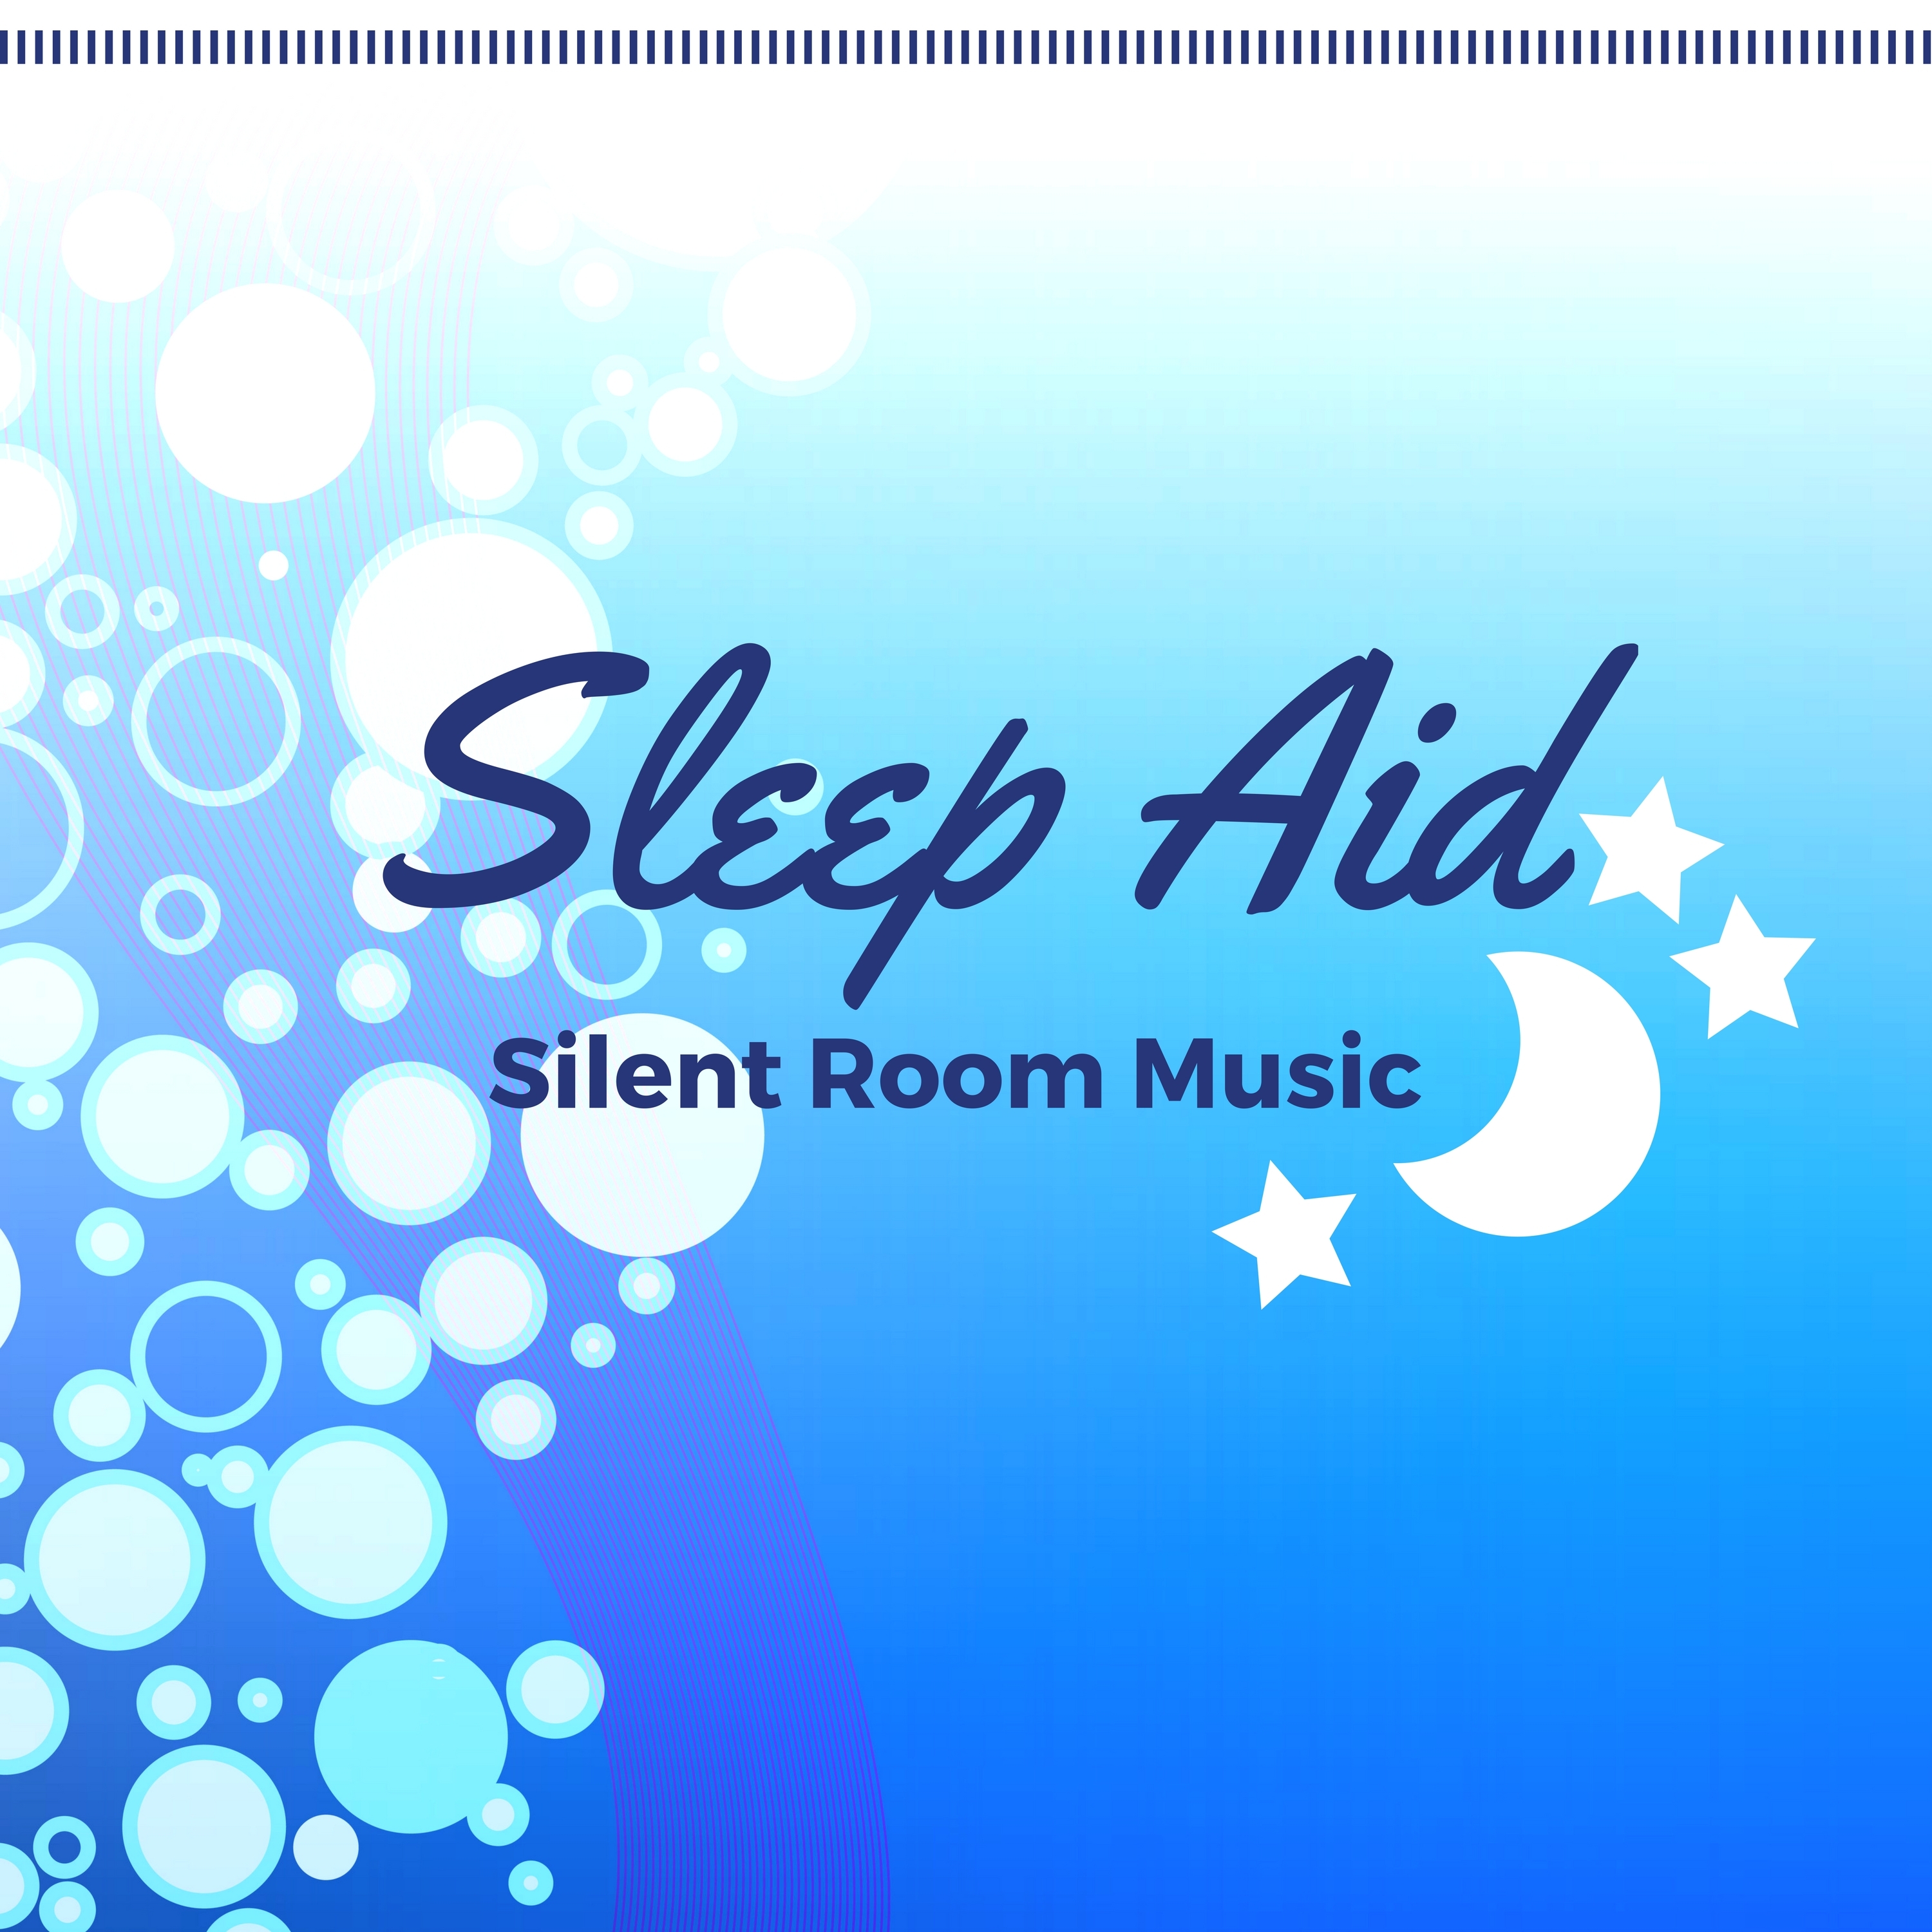 Sleep Aid: Lullaby Sweet Night, Silent Room Music